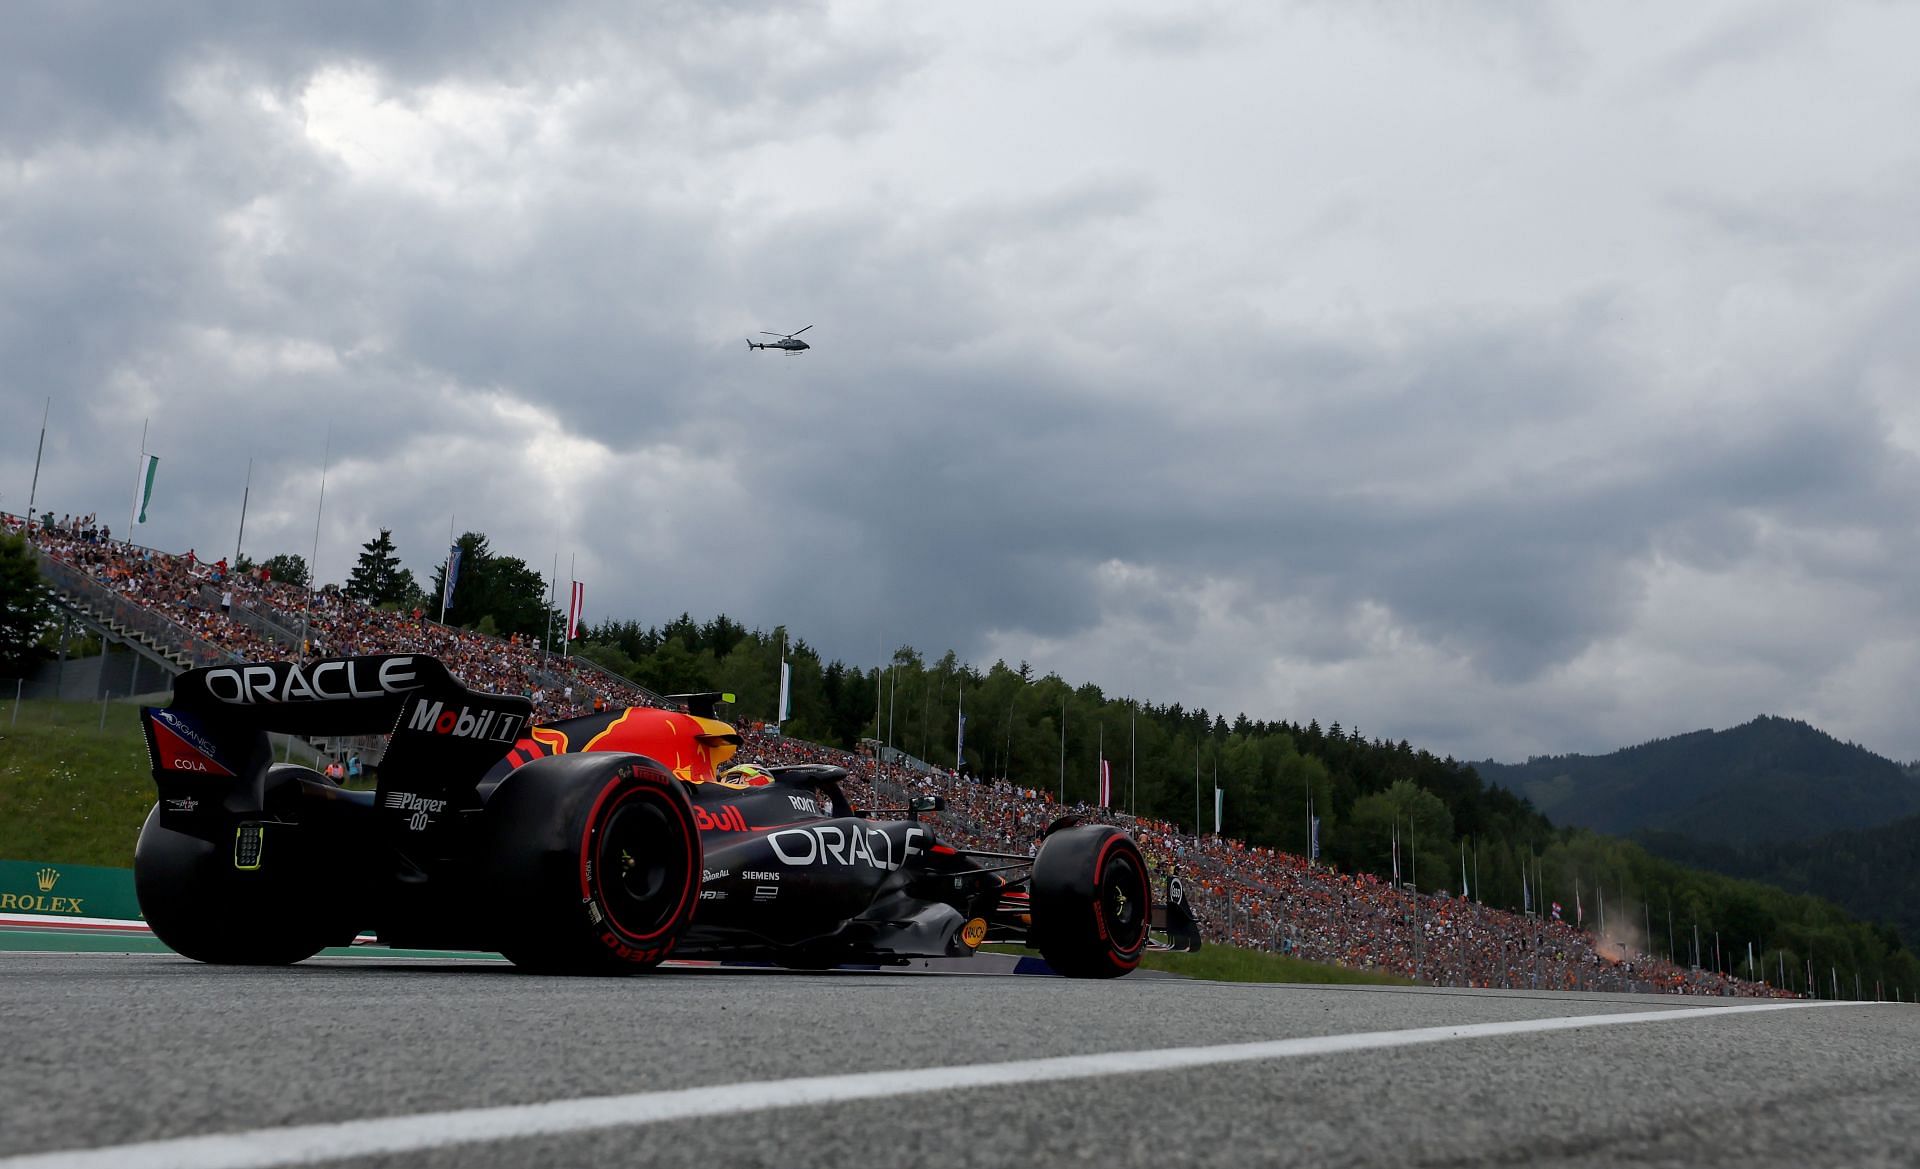 F1 Grand Prix of Austria - Practice &amp; Qualifying